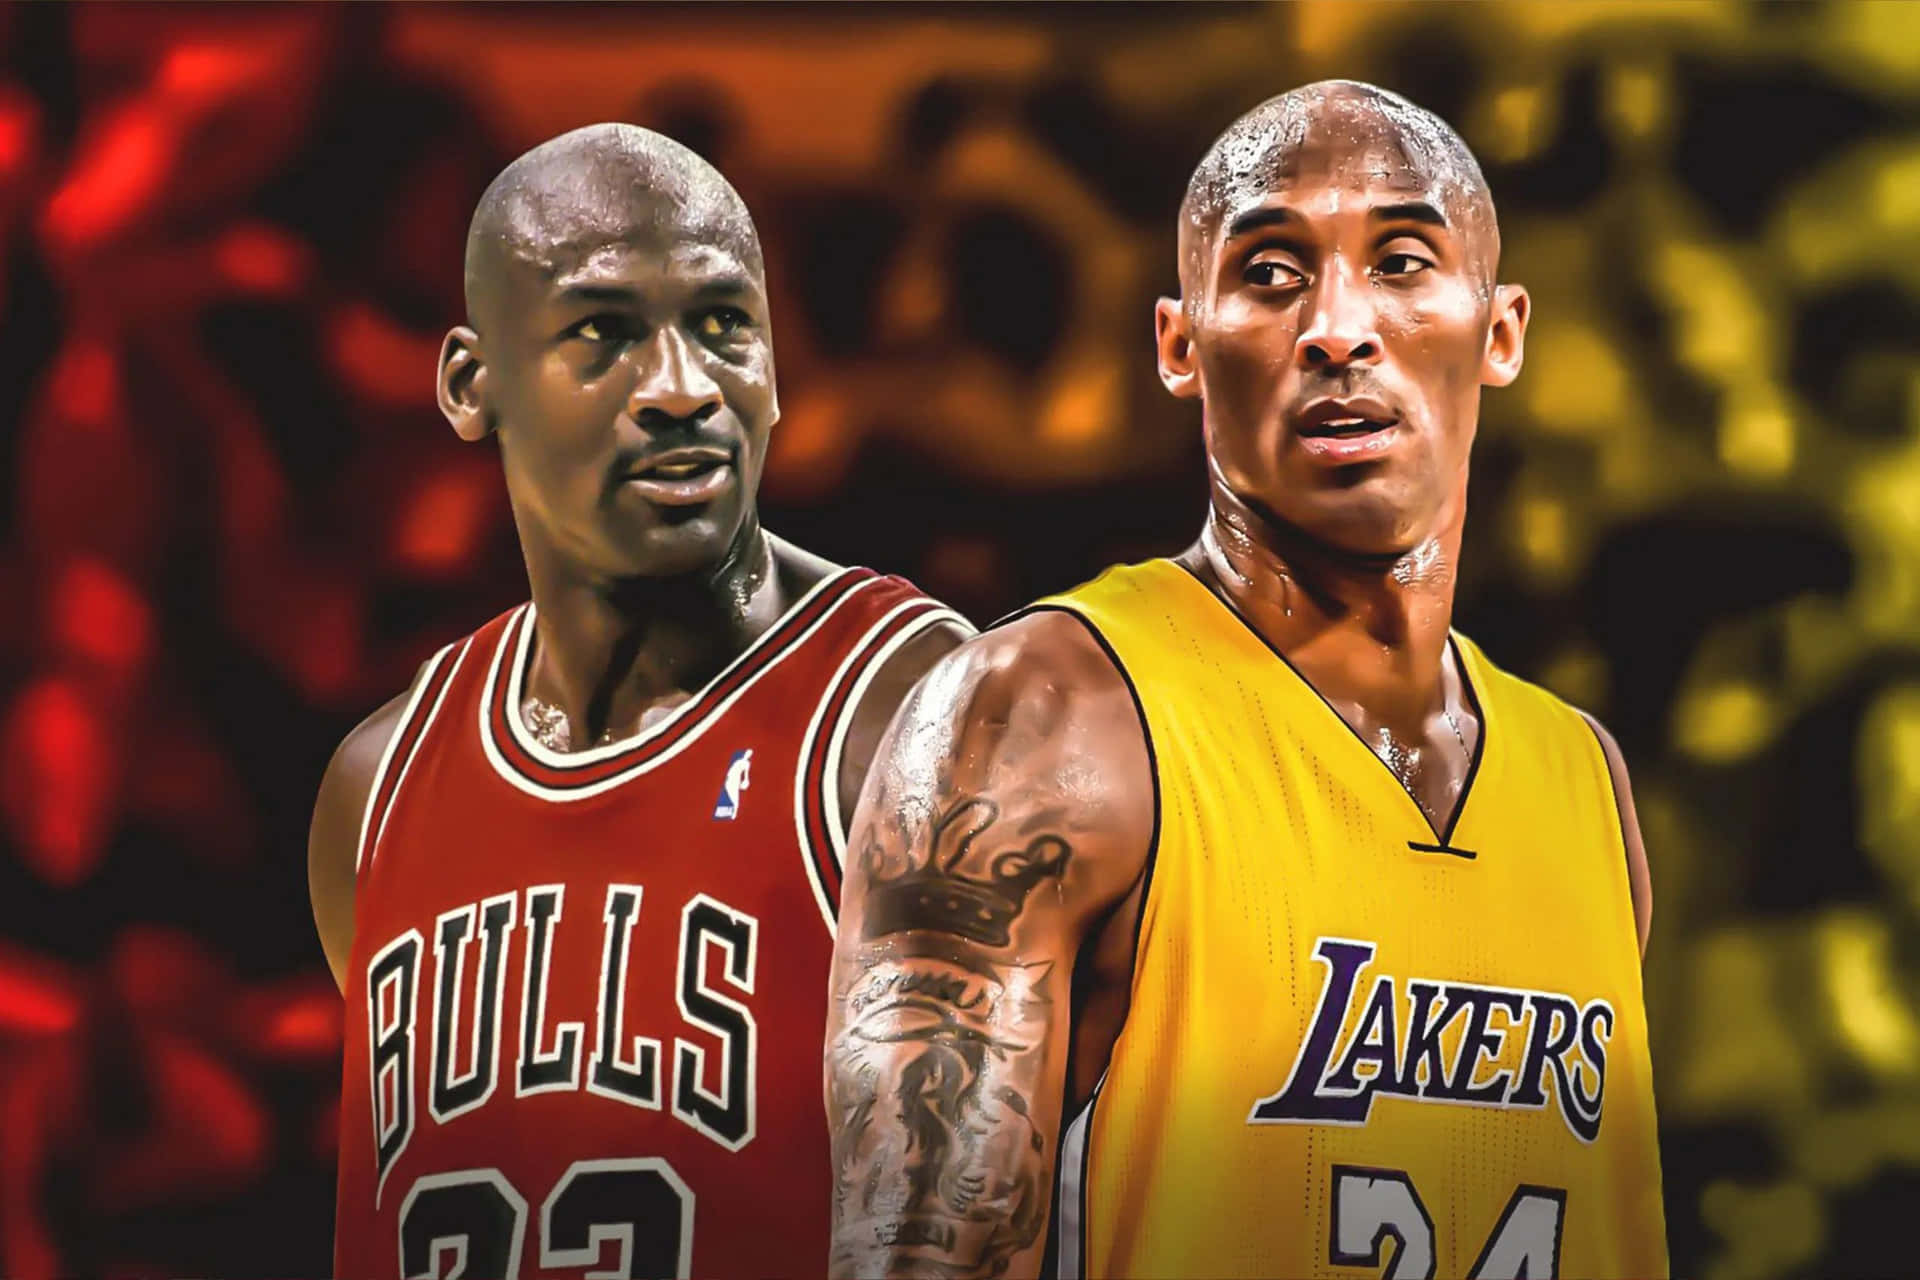 100+] Kobe Bryant And Michael Jordan Wallpapers | Wallpapers.com